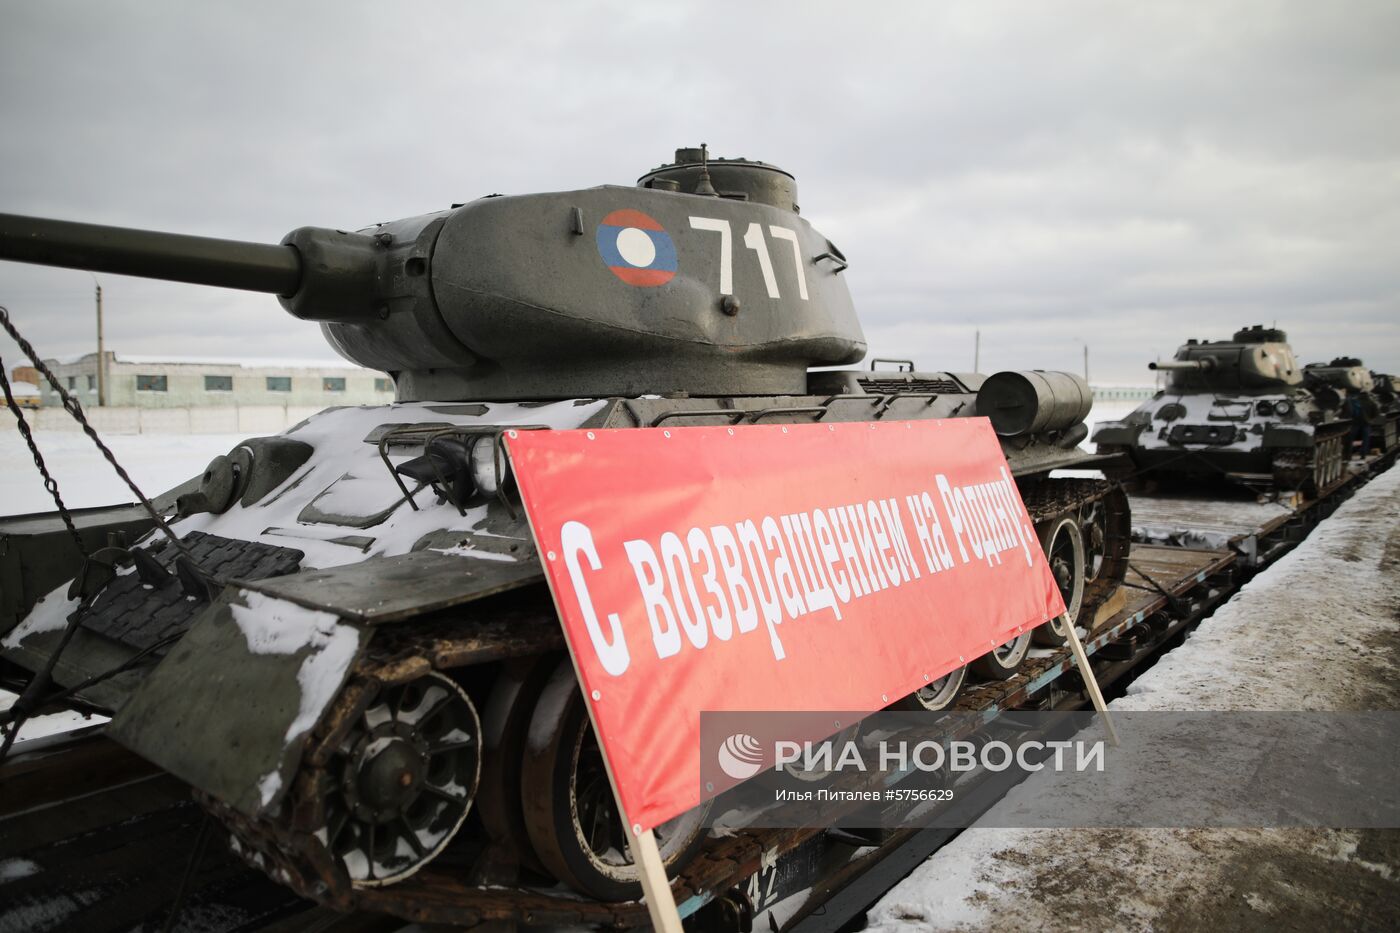 Прибытие эшелона с танками Т-34 в Московскую область   